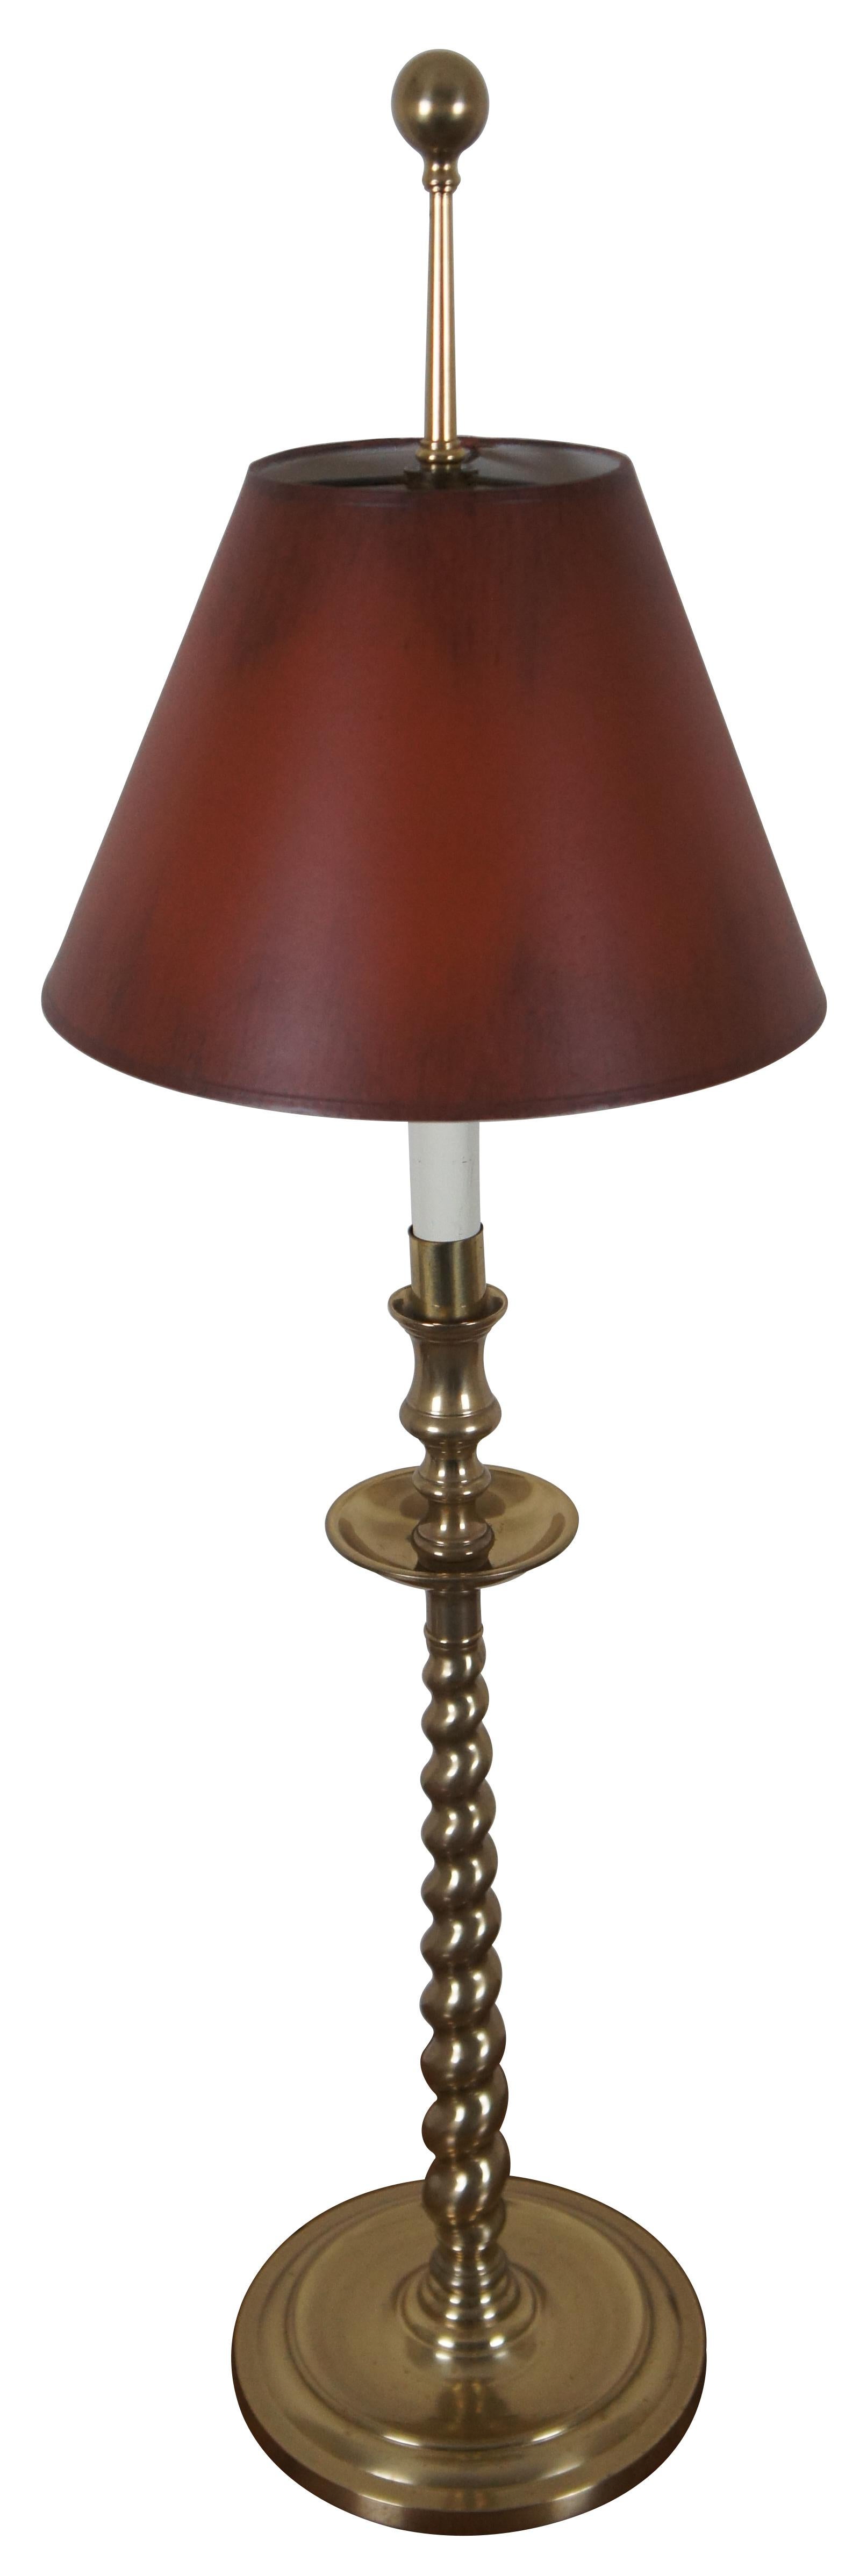 Vintage Frederick Cooper Messing Gerste Twist Altar Leuchter förmigen Tisch / Buffet Lampe mit roten Schatten.

Maße: 8,25